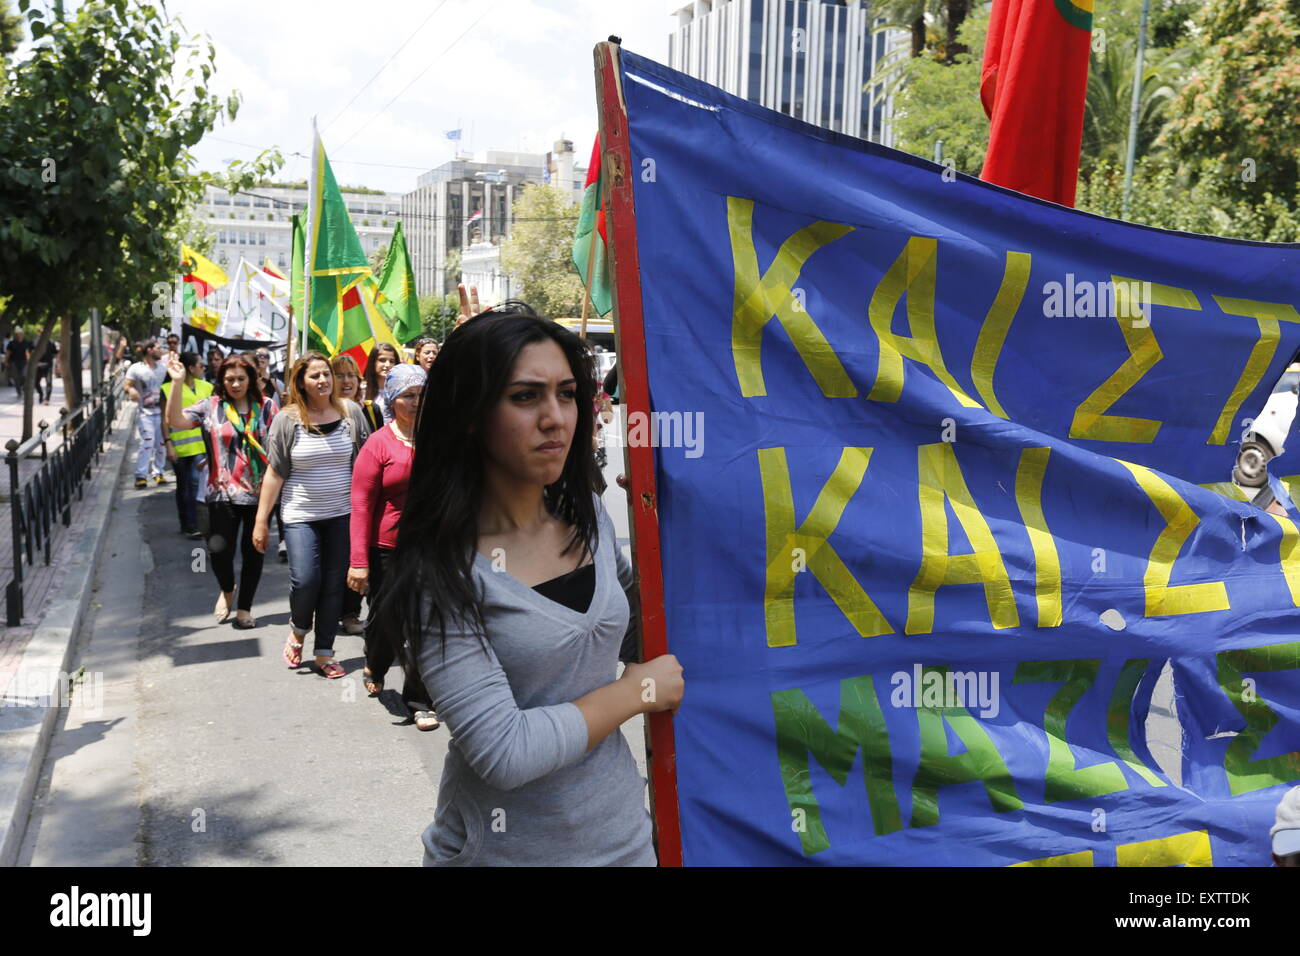 Atene, Grecia. Il 16 luglio 2015. Un manifestante curdo porta un banner, per chiedere la liberazione dei leader del PKK Abdullah Ocalan. Popolazione curda che vivono in "Grecia, hanno marciato per l'Ambasciata turca, chiamando per un rilascio del leader del Partito dei Lavoratori del Kurdistan) PKK, che è attualmente in carcere in Turchia. Foto Stock